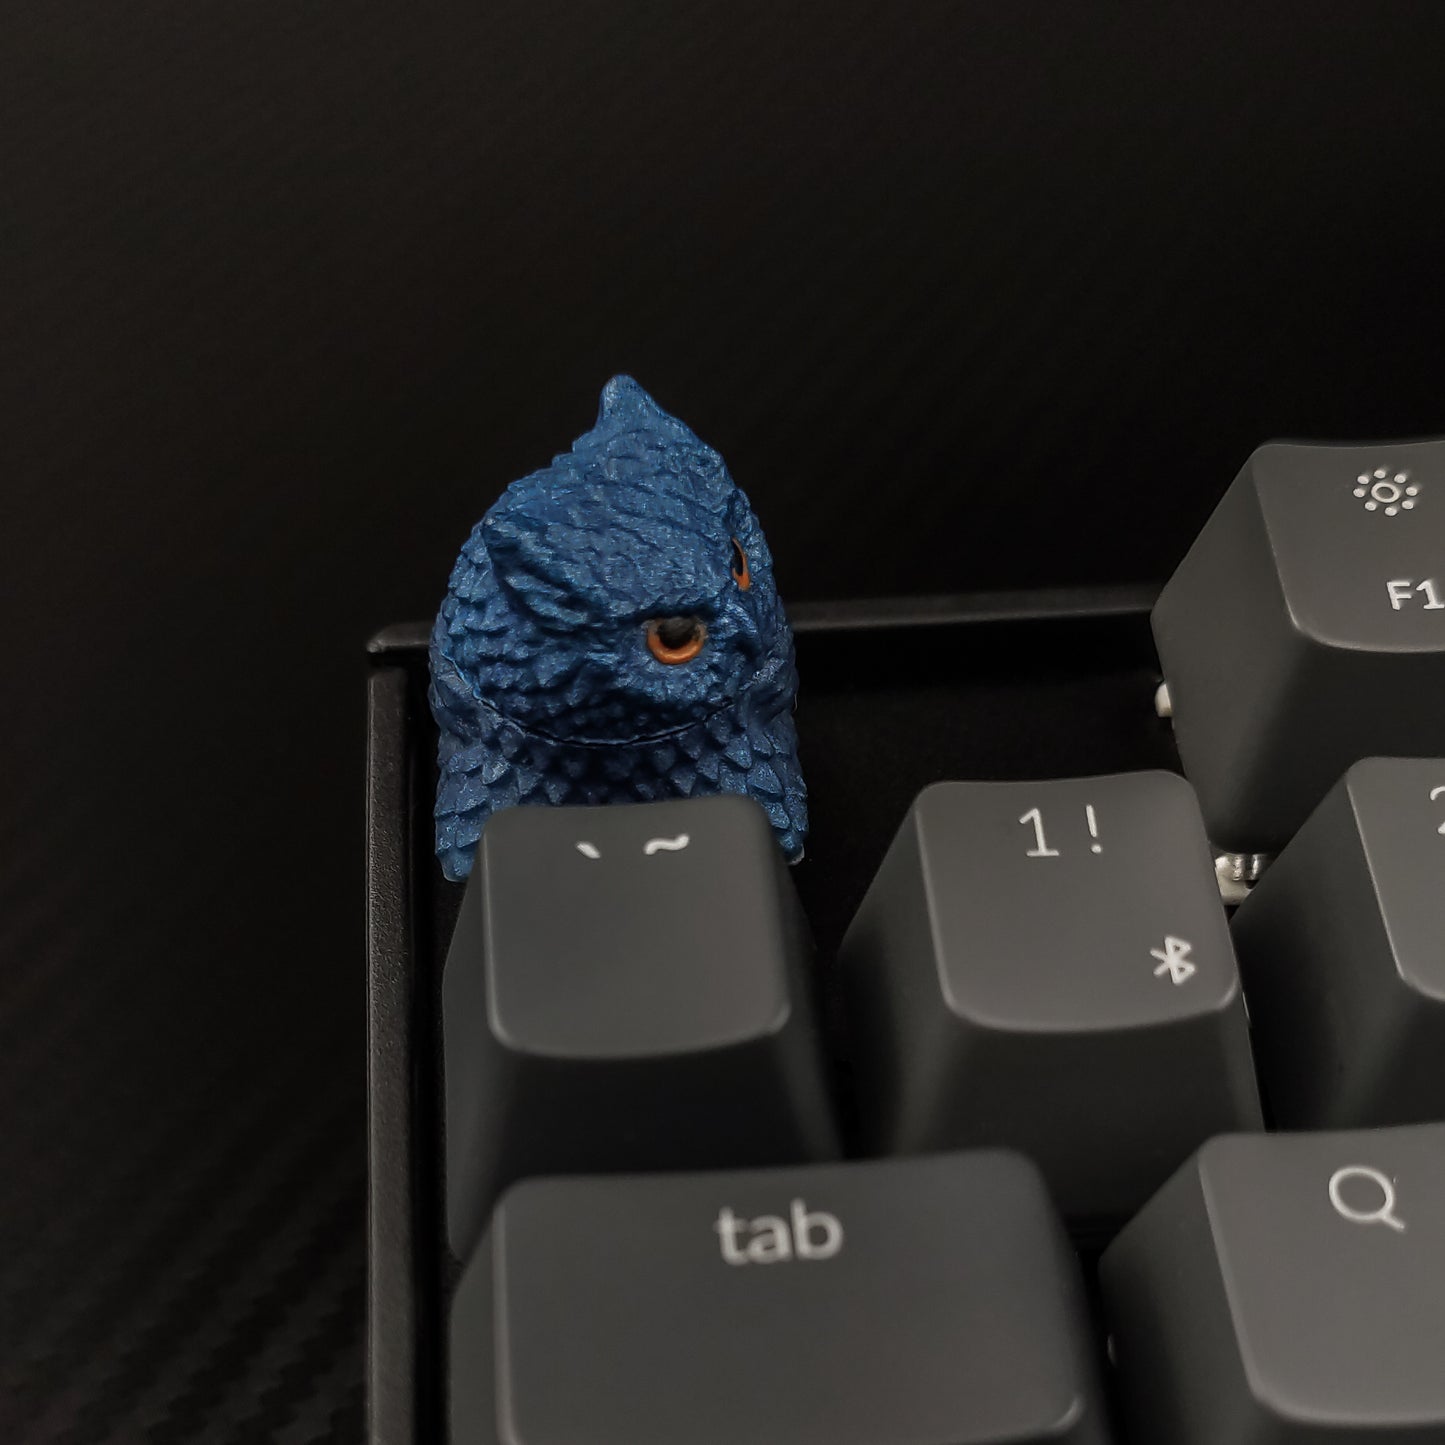 Owl artisan keycap #44